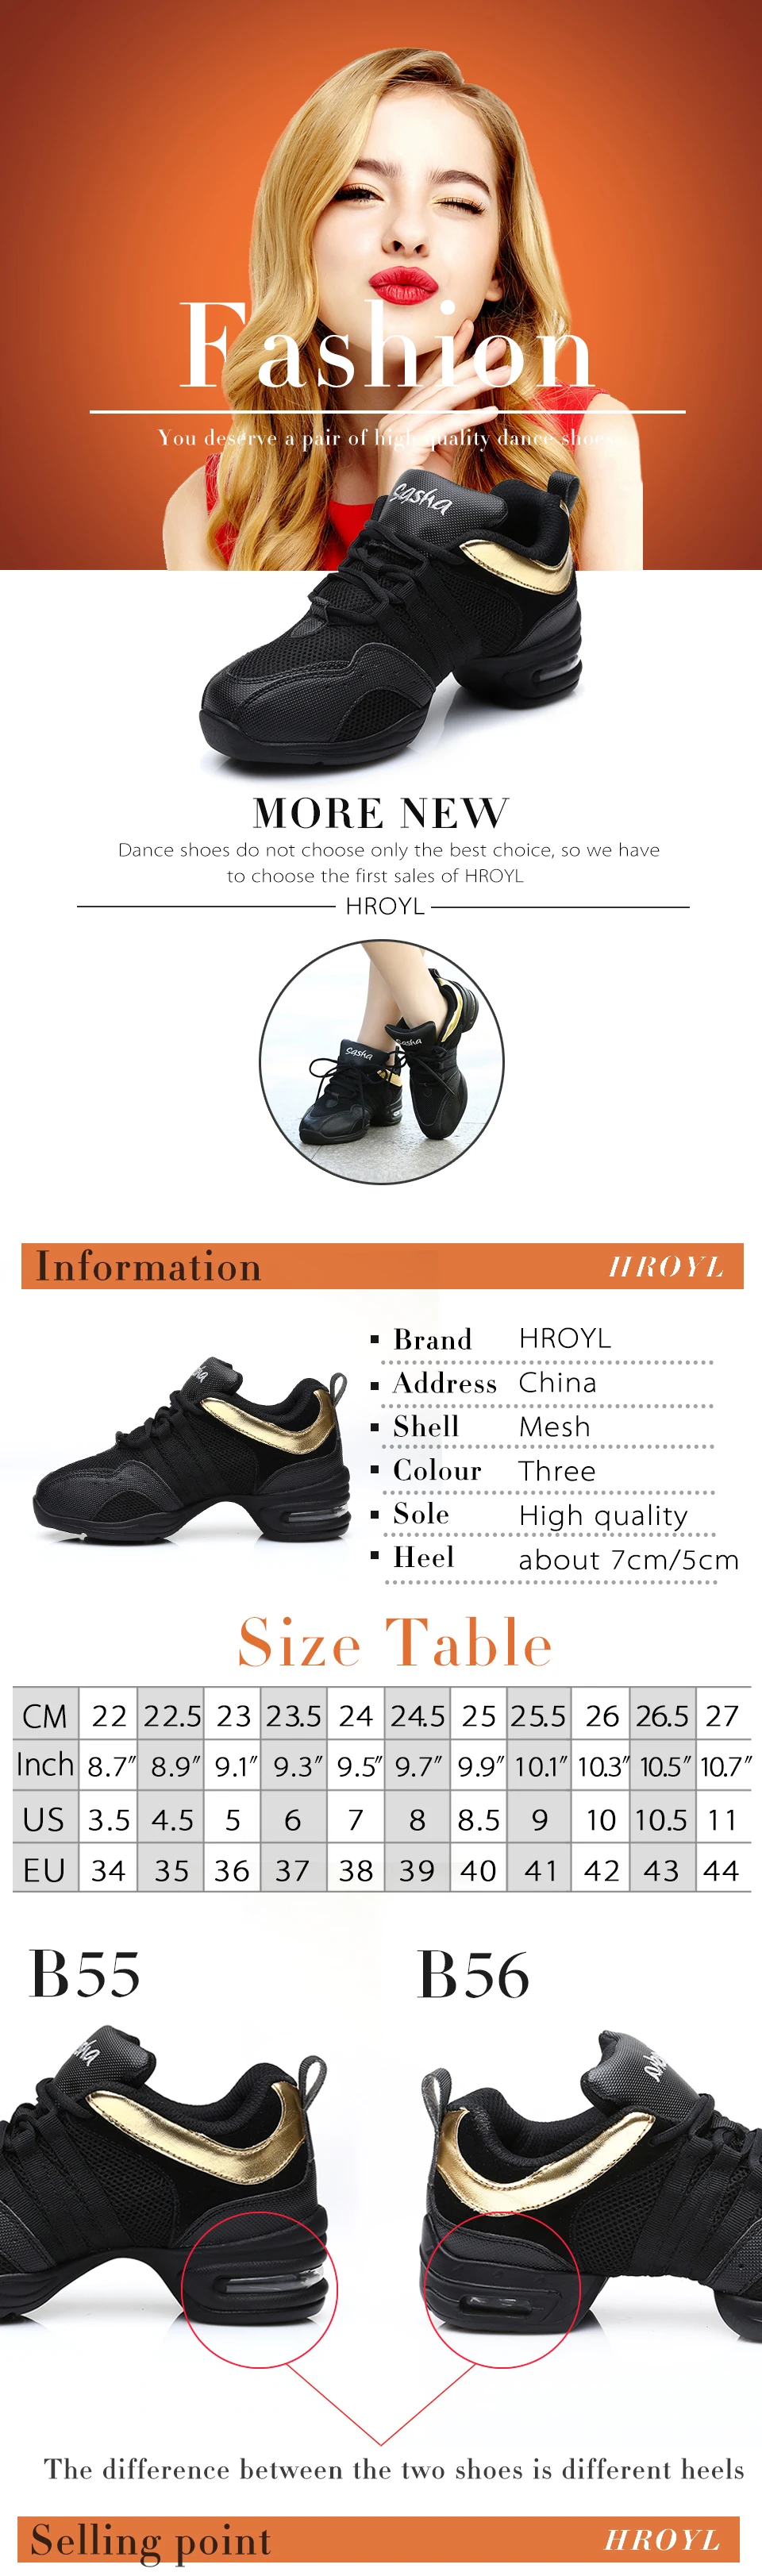 Танцевальная обувь на мягкой подошве для фитнеса; дышащие Танцевальные Кроссовки из сетчатого материала; Танцевальная обувь на квадратном каблуке; Цвет черный, белый; обувь в стиле джаз и хип-хоп